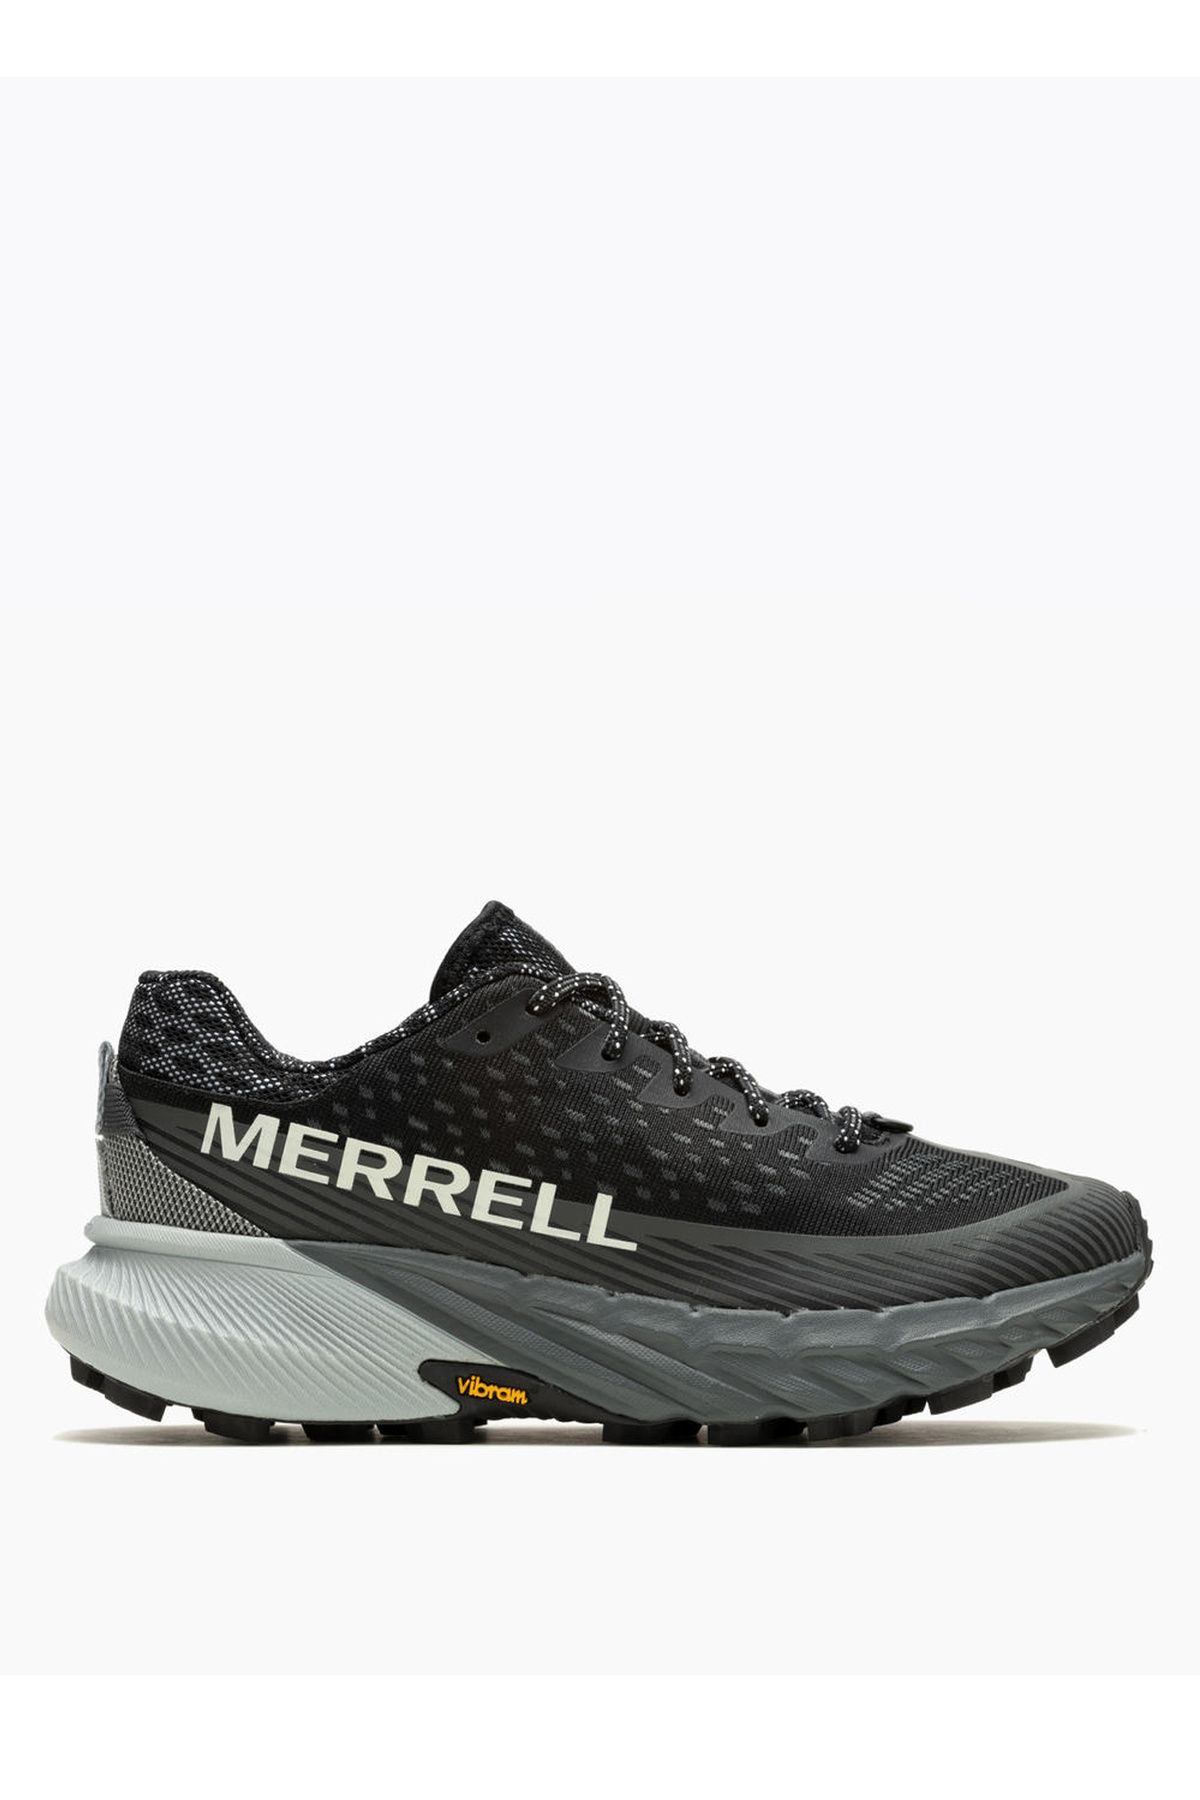 Merrell Siyah Kadın Koşu Ayakkabısı J067808Agility Peak 5